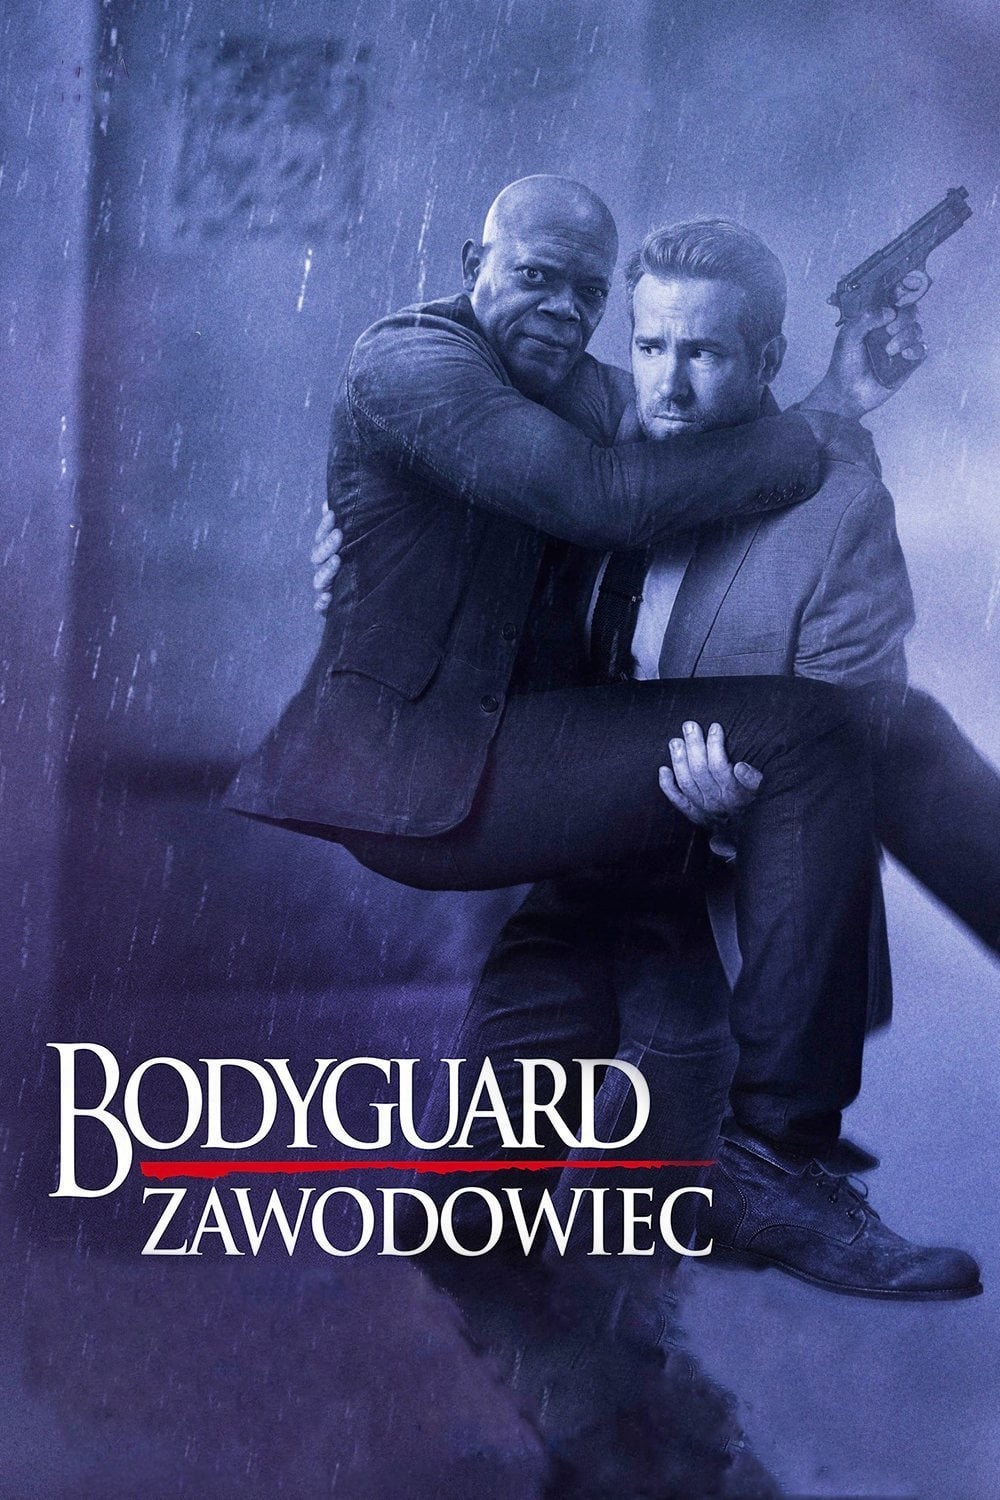 Bodyguard Zawodowiec (2017)